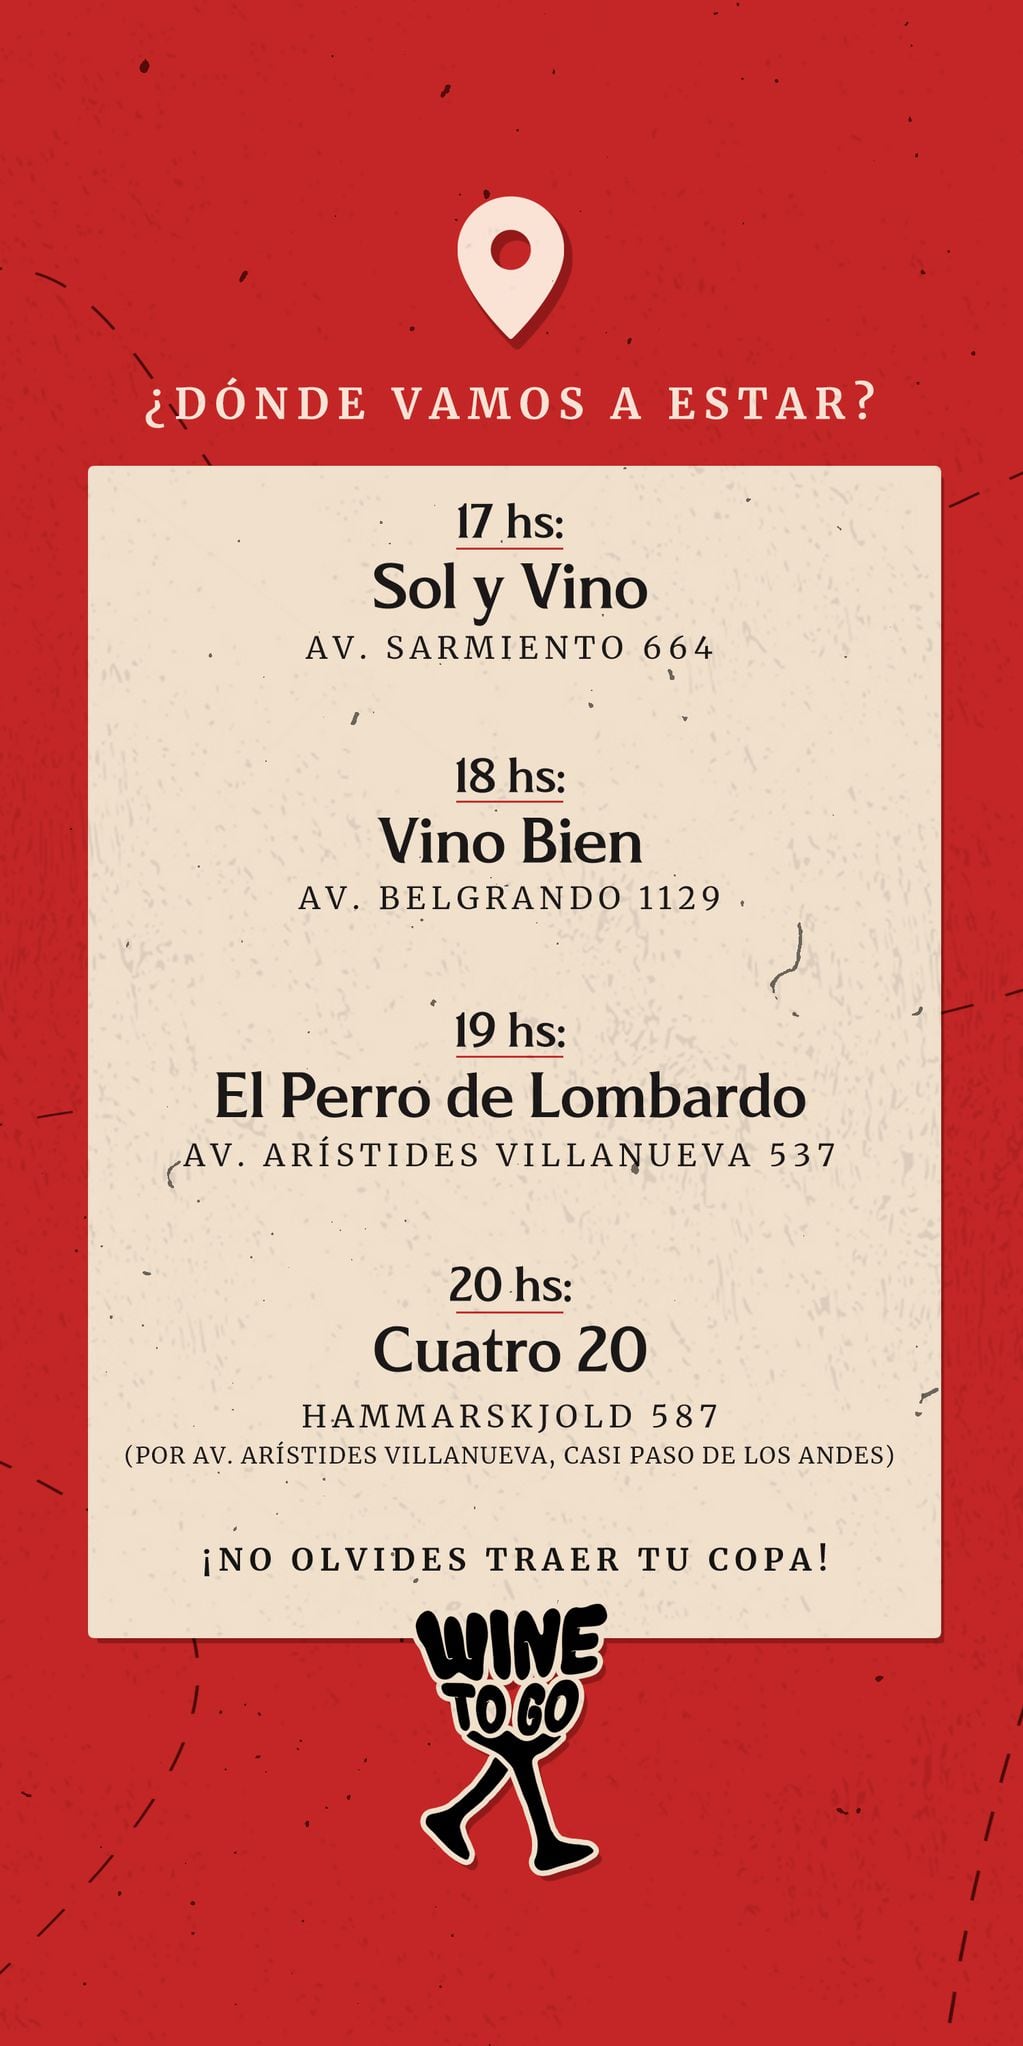 Rolando “Flaco” Schiavi y los ex Pumas Eusebio Guiñazú, Pato Albacete, Manu Carizza y Julio Farías recorrerán bares de Mendoza con sus vinos.